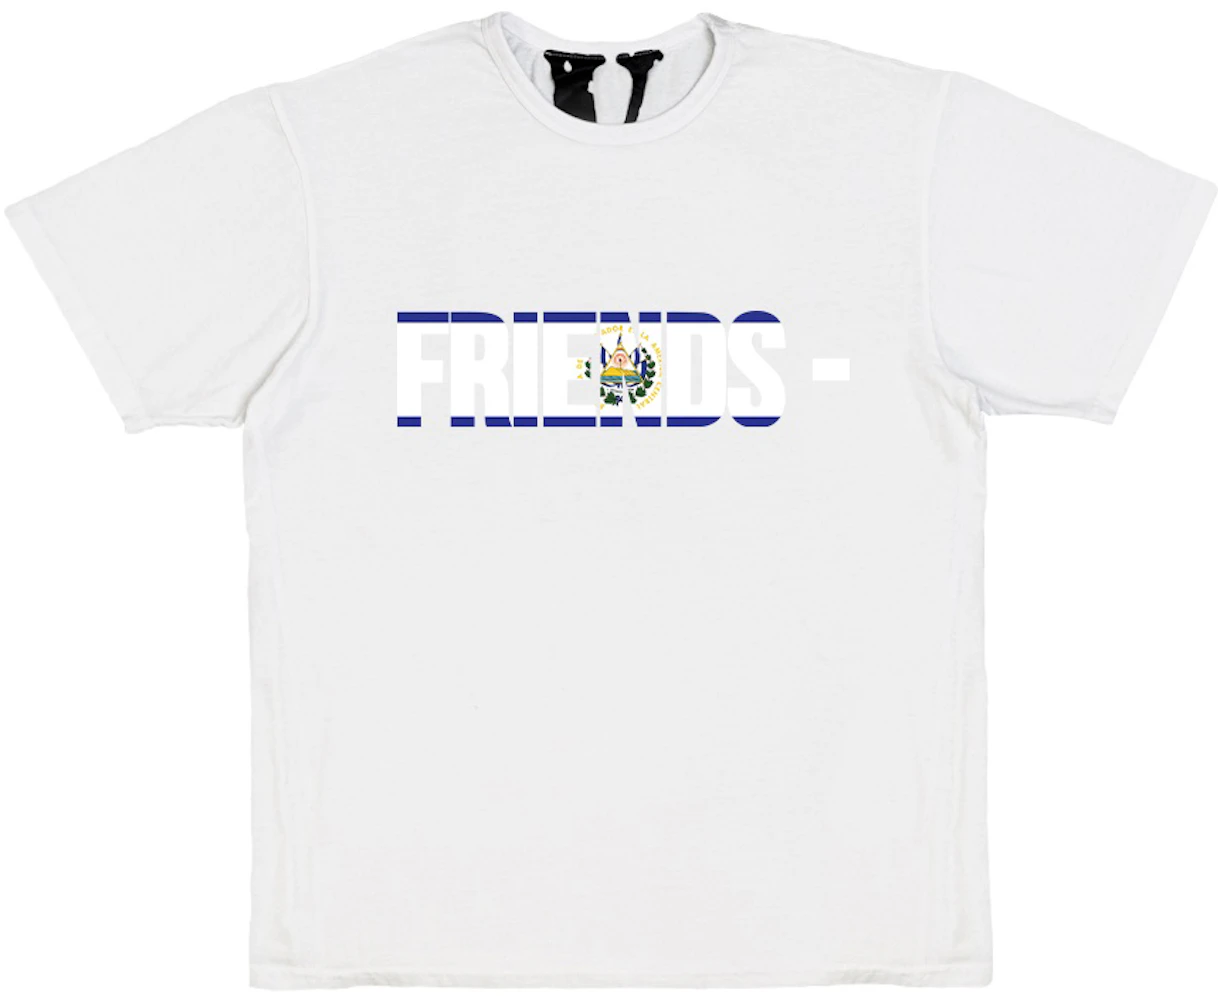 Vlone FRIENDS SLV T-shirt White Men's - SS21 - US